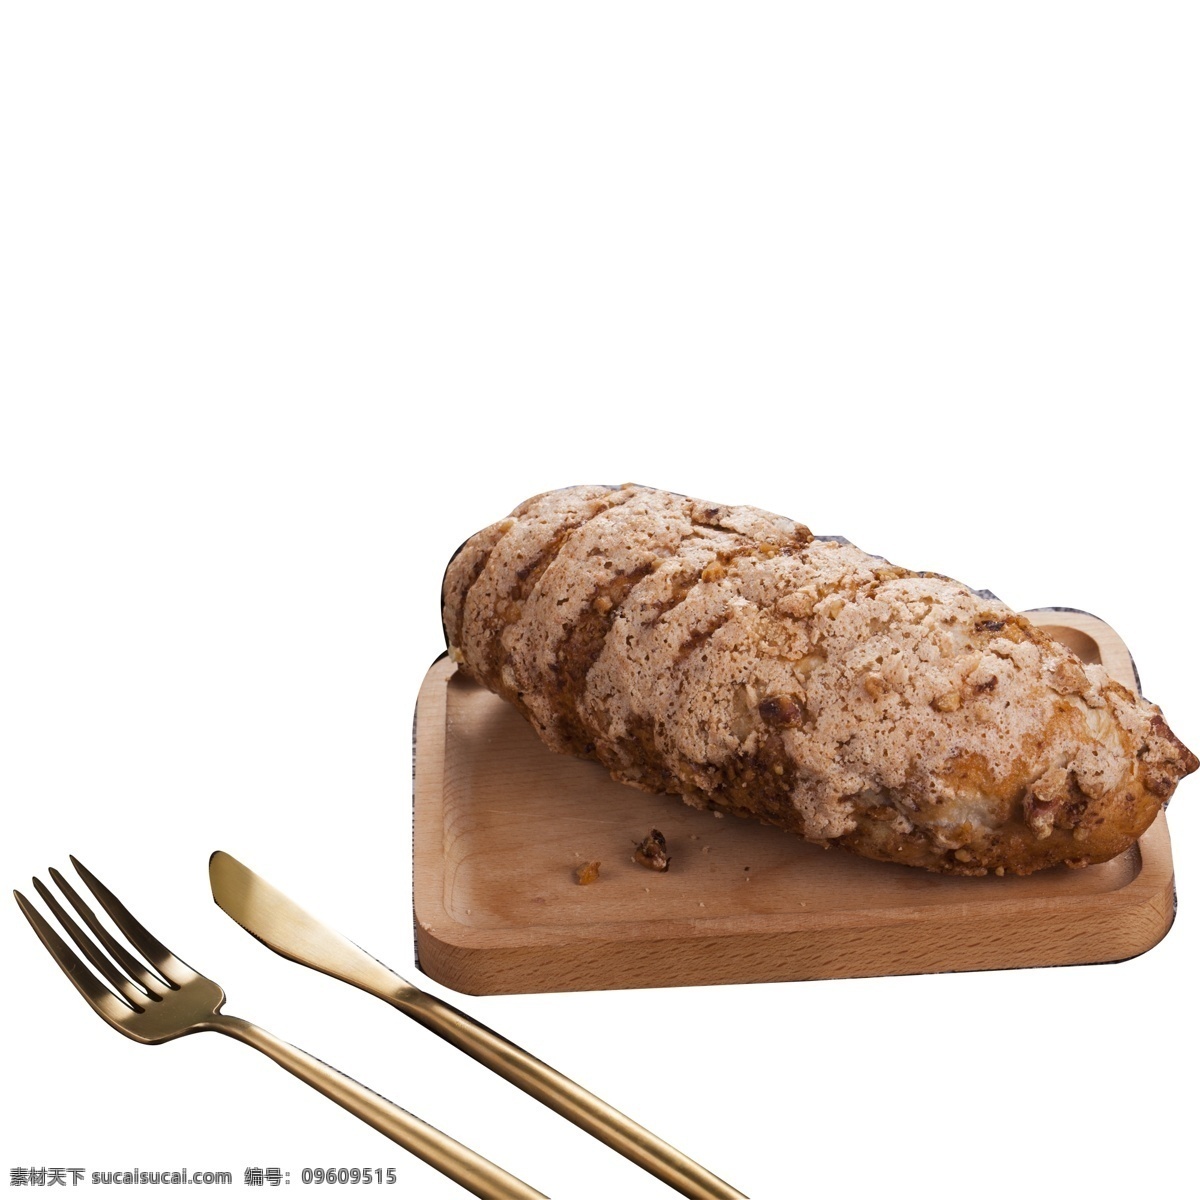 银灰色 刀具 面包 免 抠 图 新鲜的面包 刀叉 生活刀叉 厨房用品 西餐用品 叉子 生活用品 厨房工具 面食